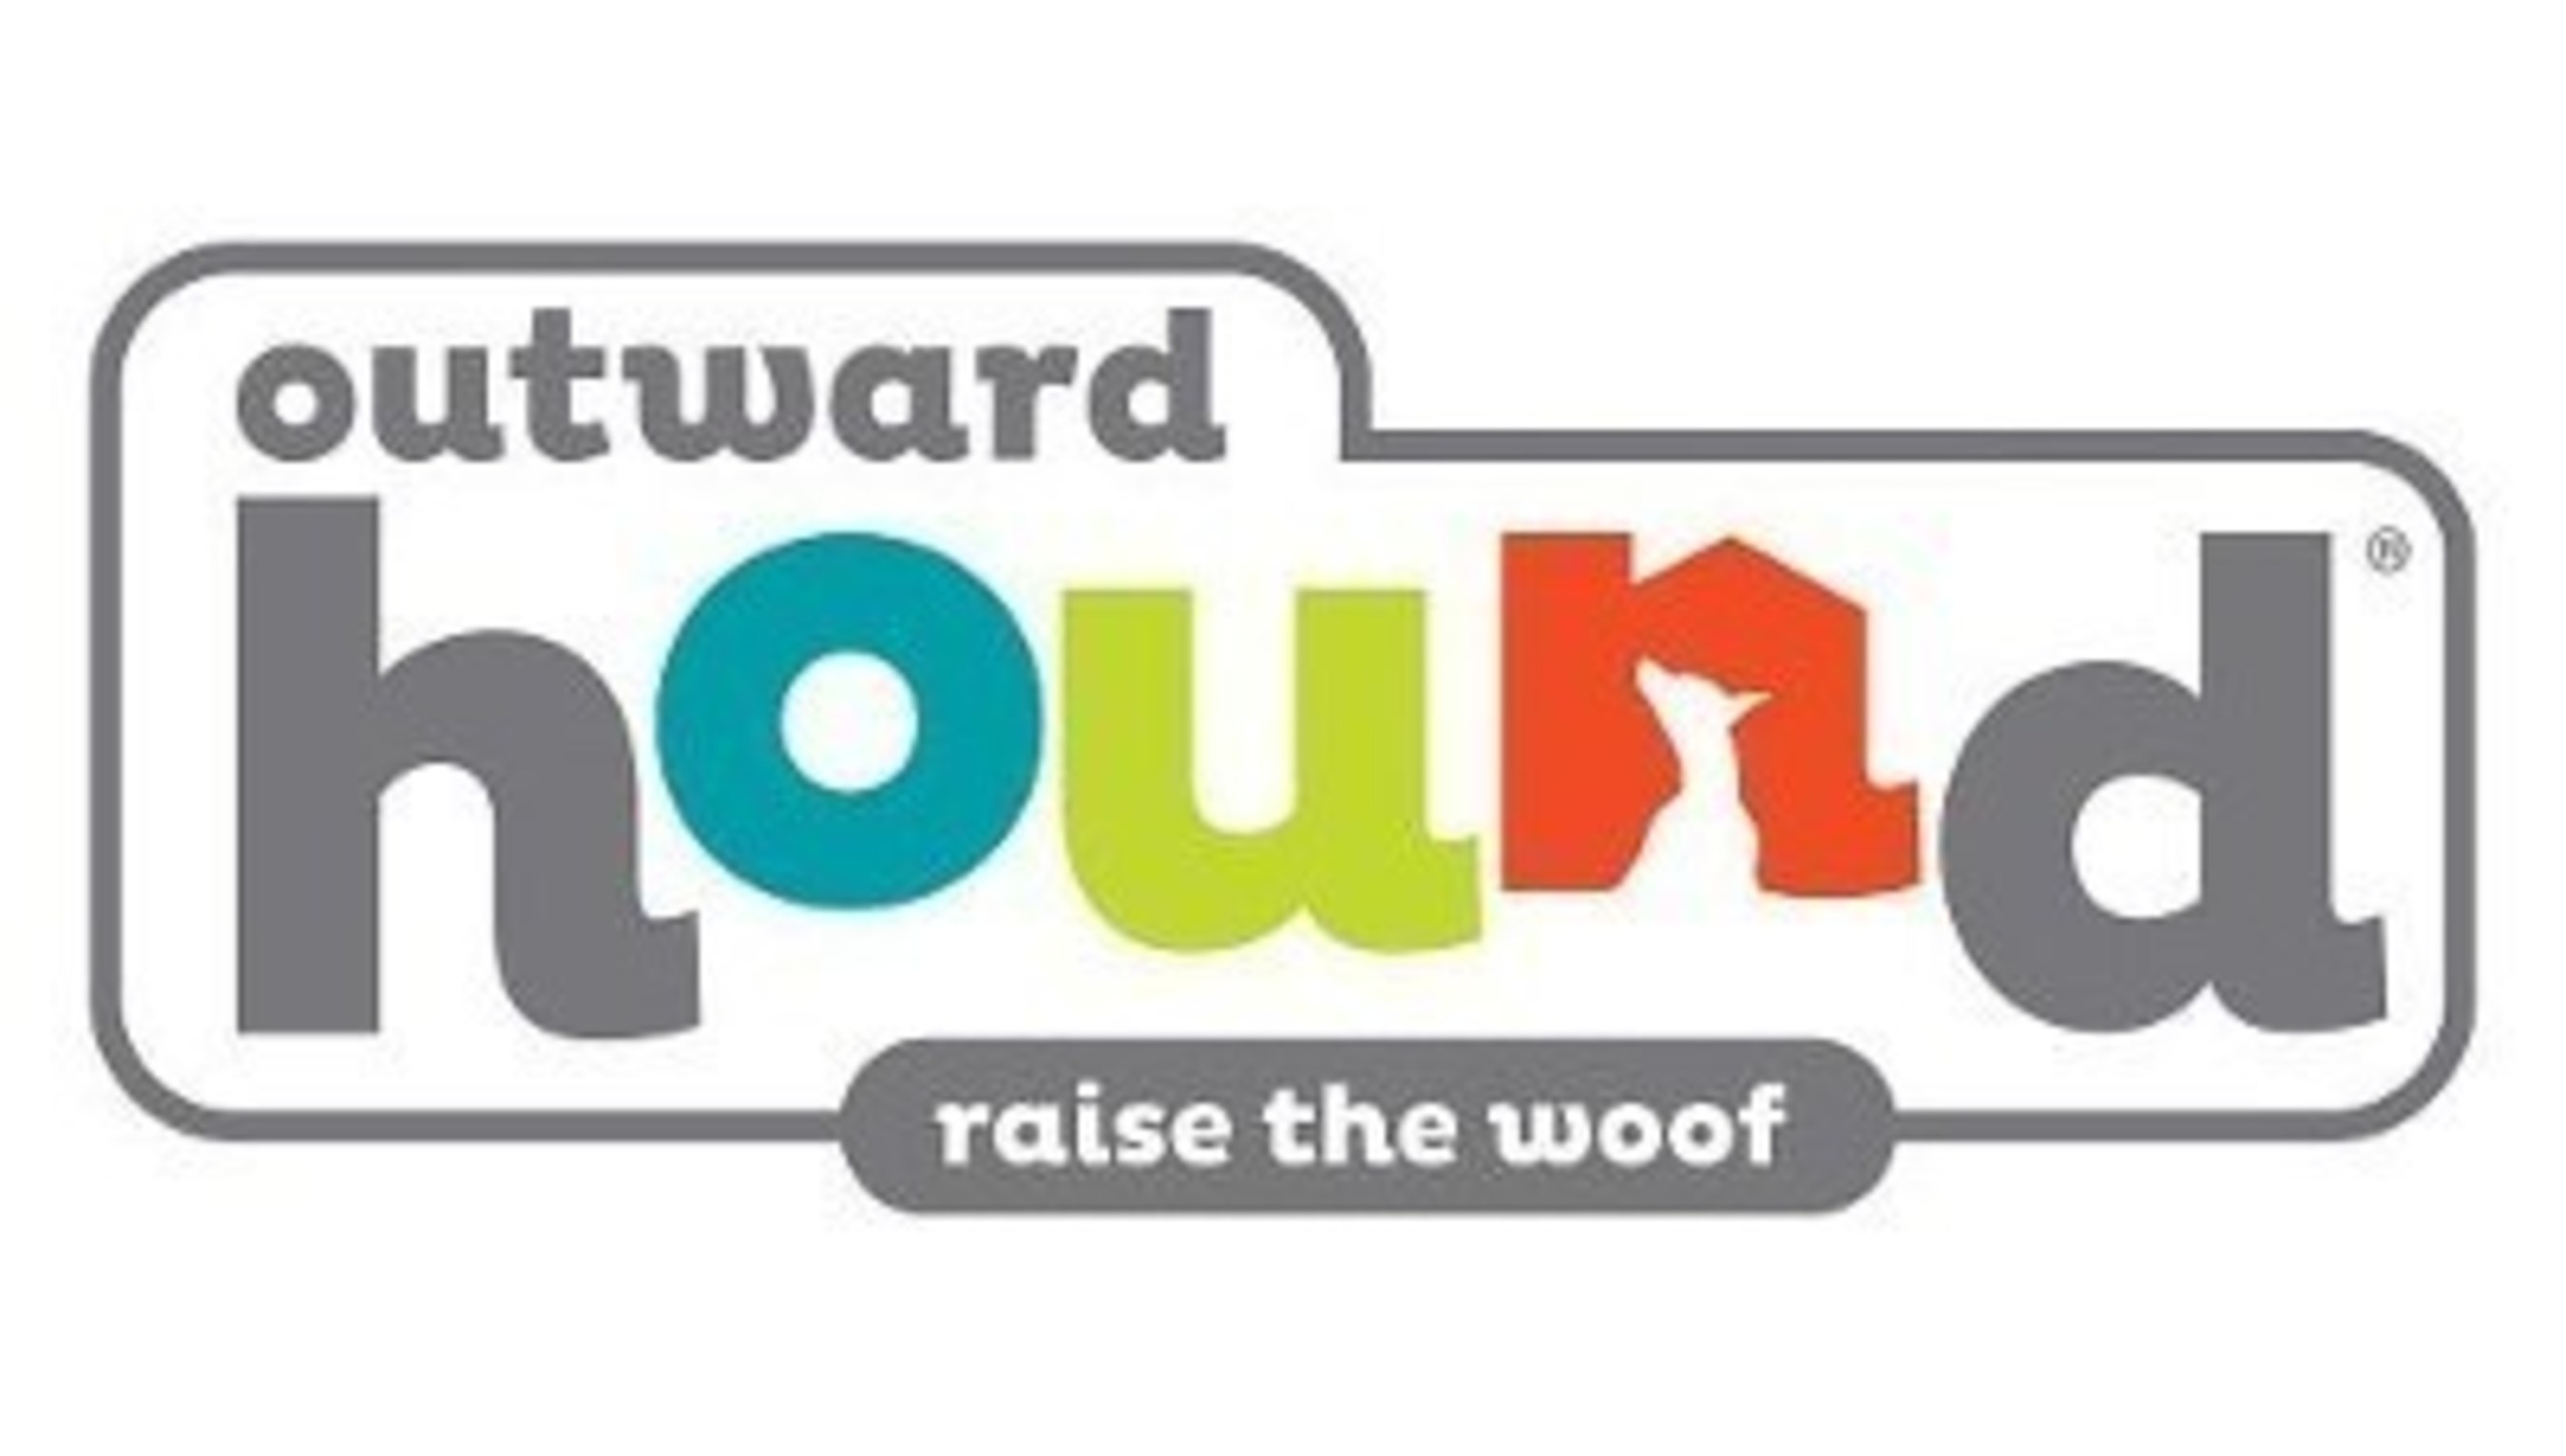 outward hound puzzle